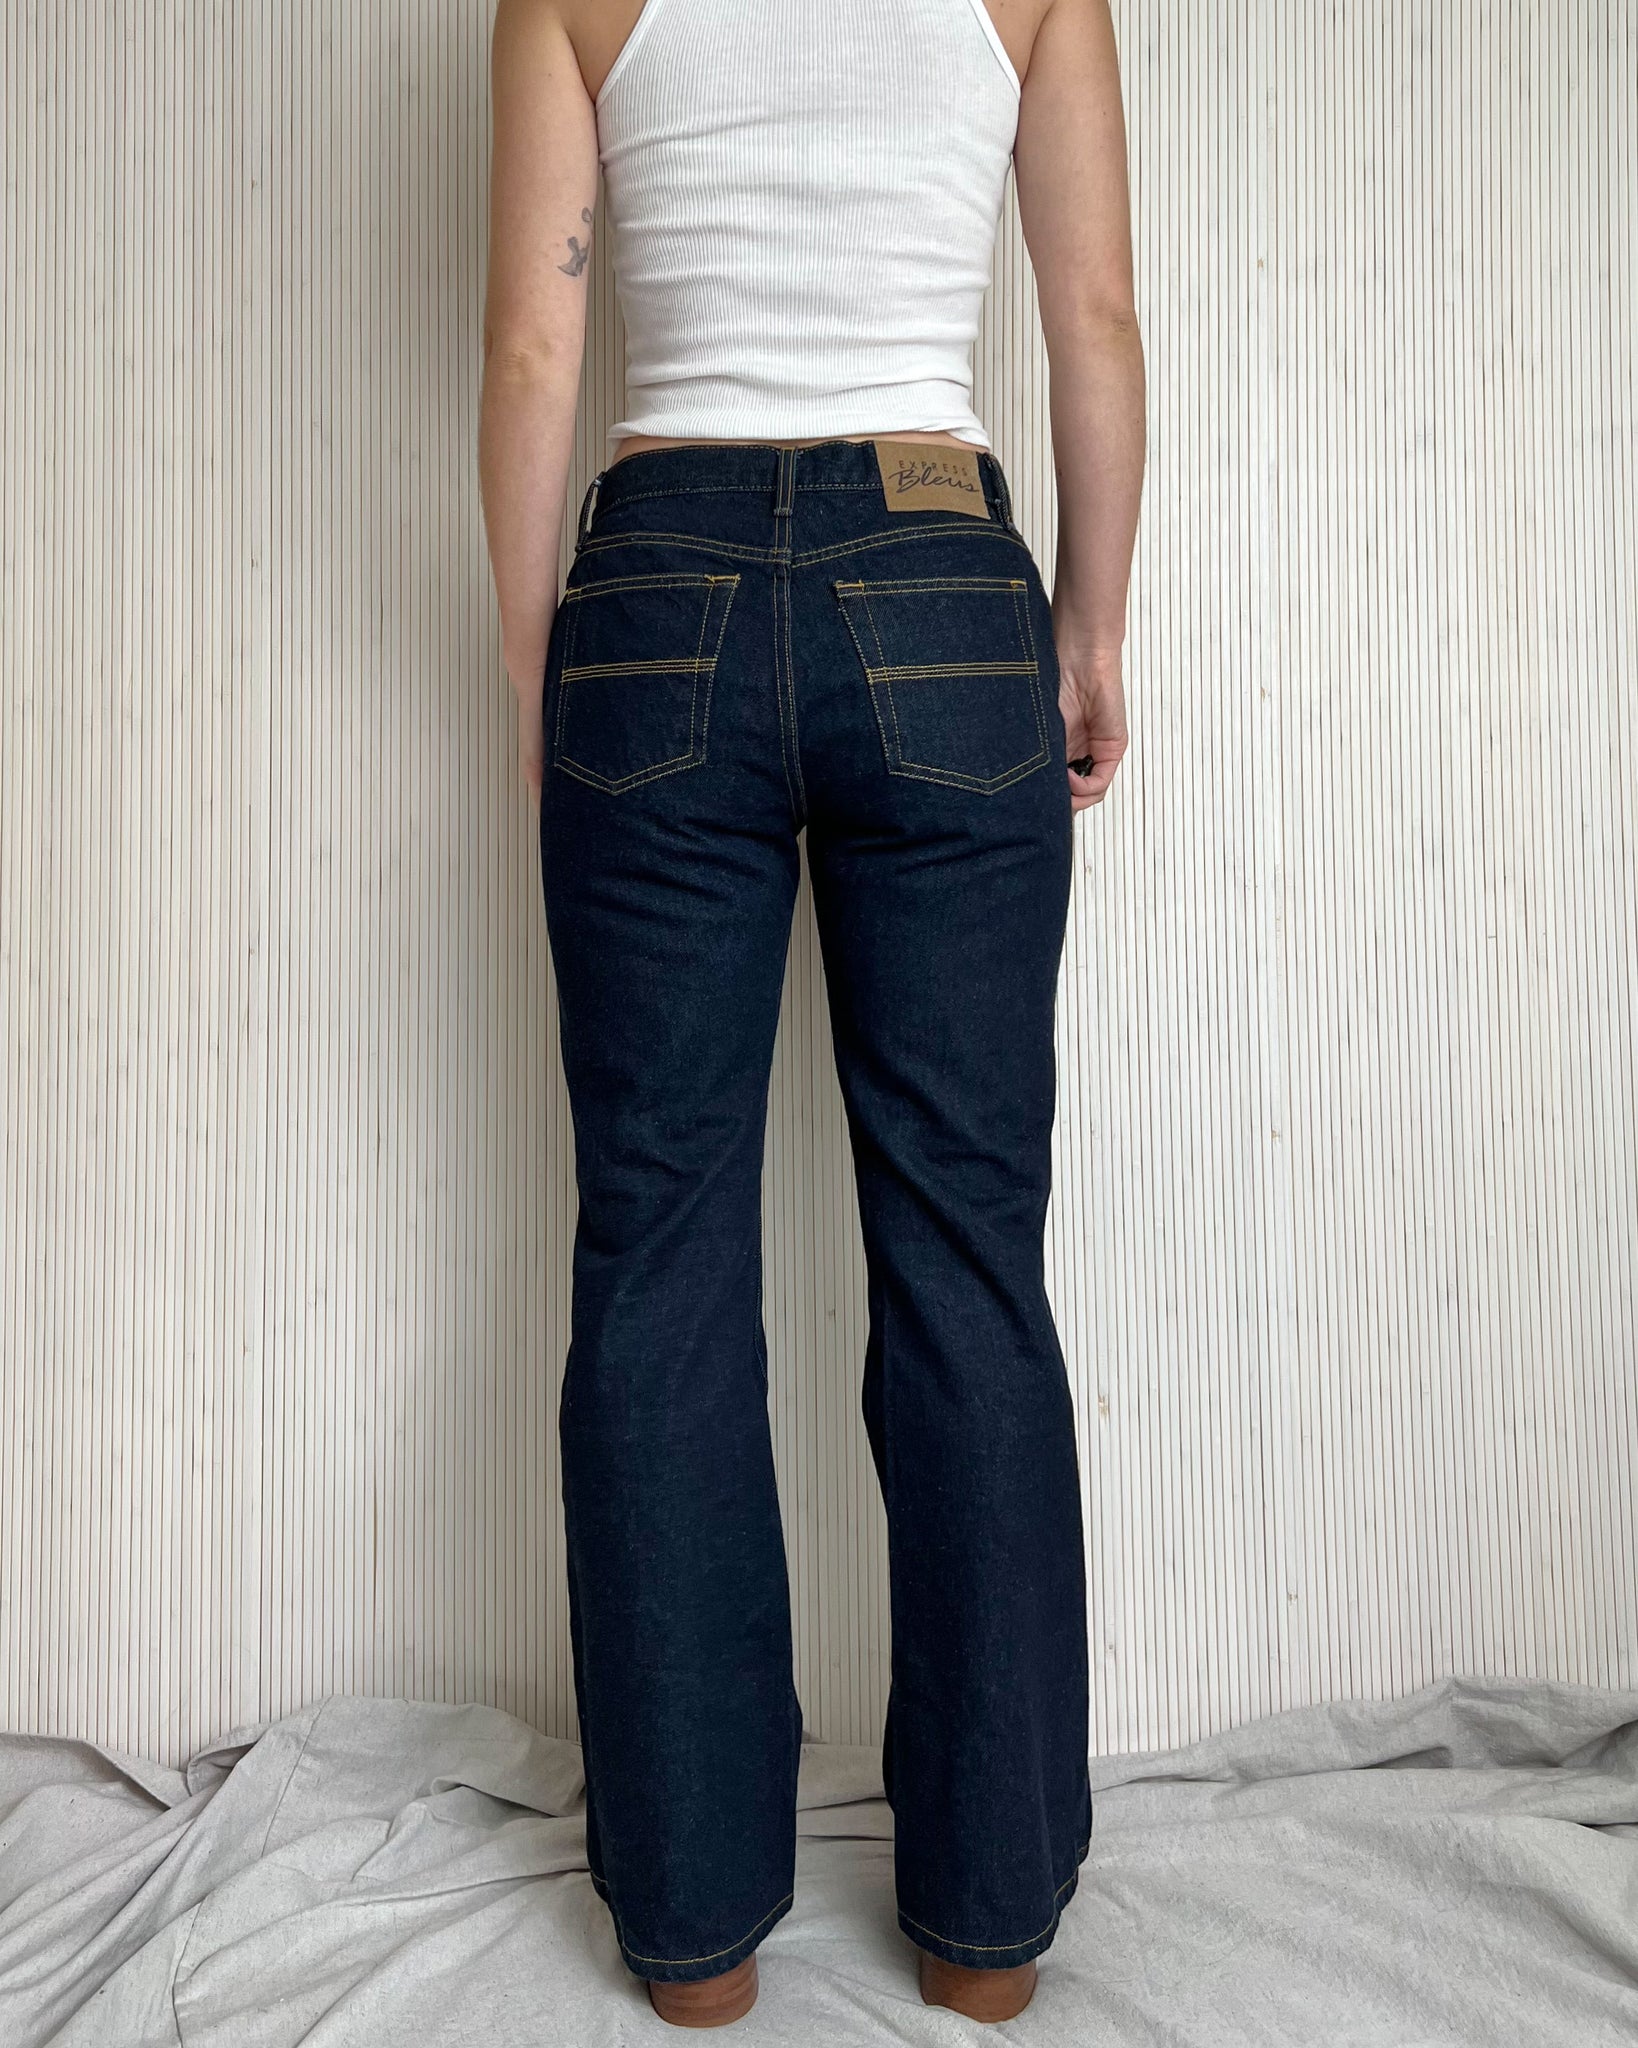 90s Flared Dark Denim Jeans (waist 28”)